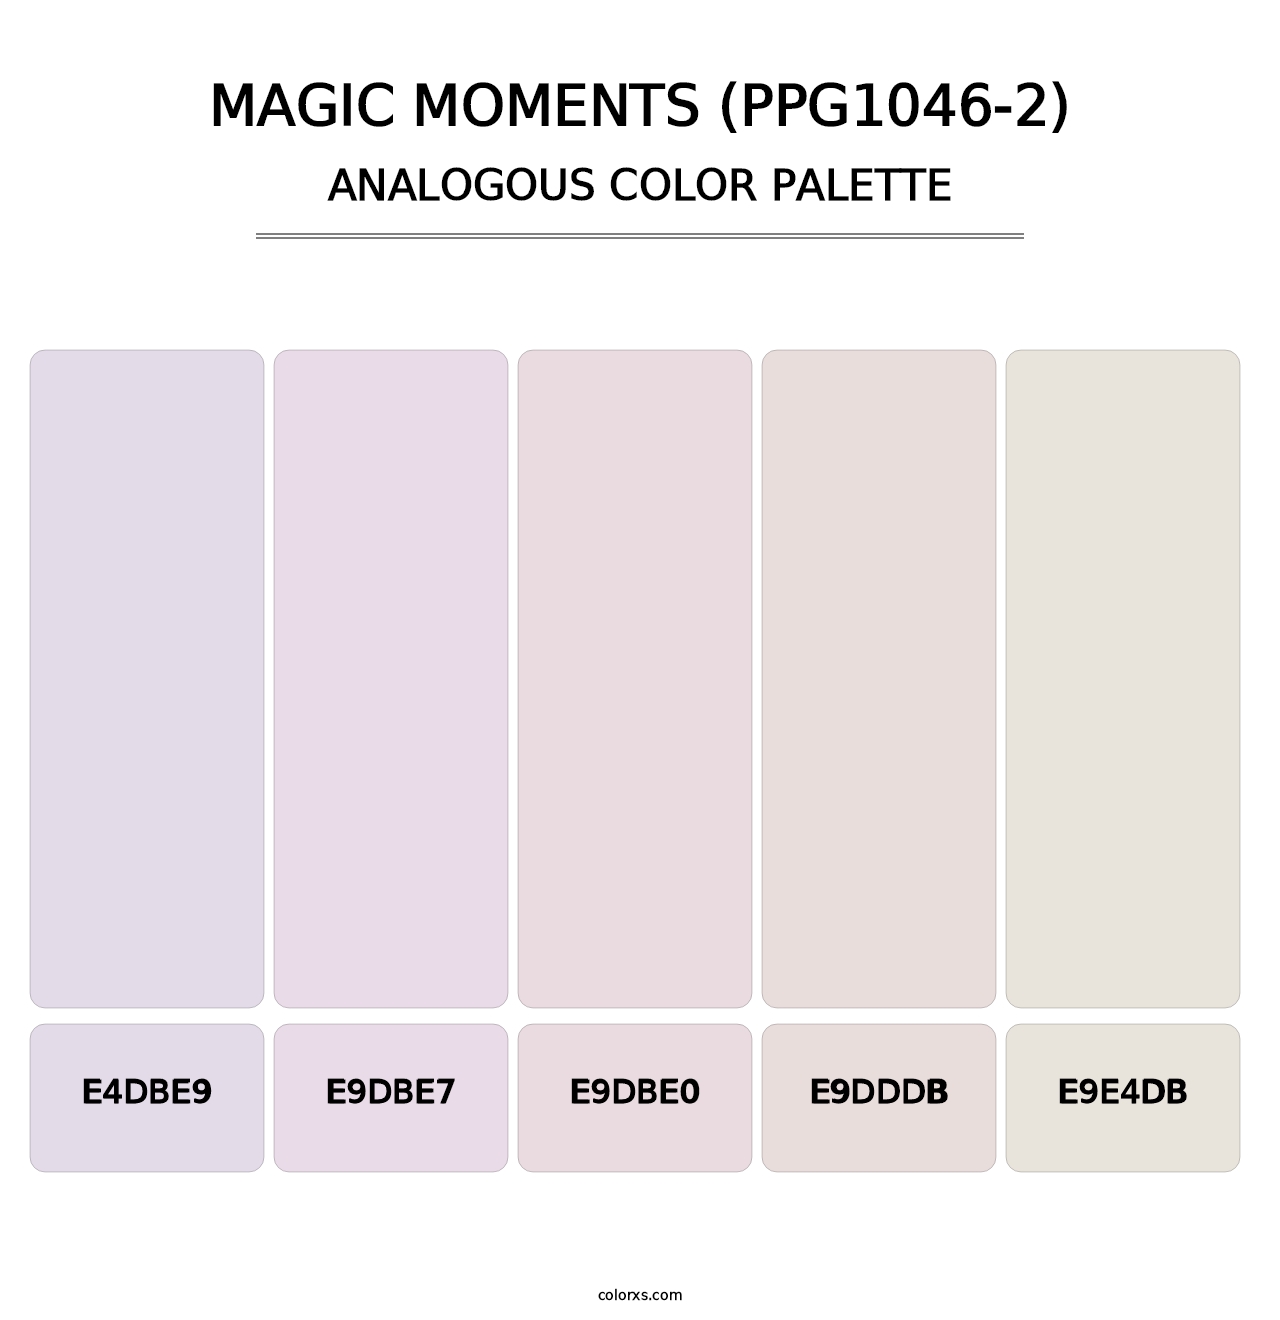 Magic Moments (PPG1046-2) - Analogous Color Palette